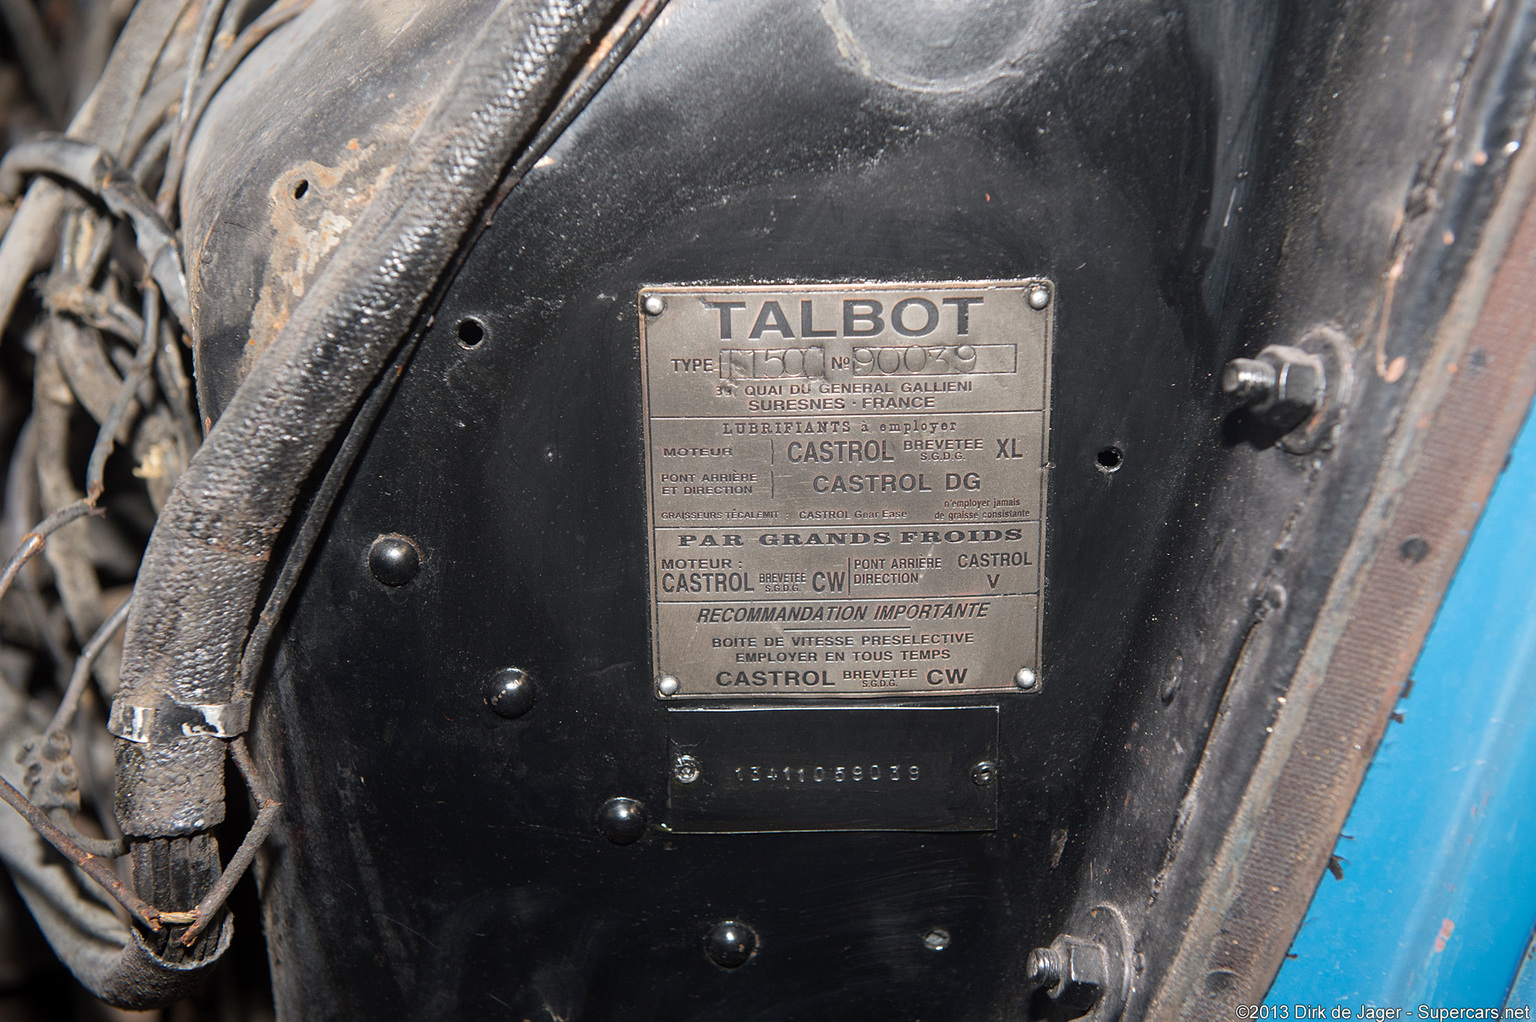 1936 Talbot-Lago T150C ‘Lago Speciale’ Gallery